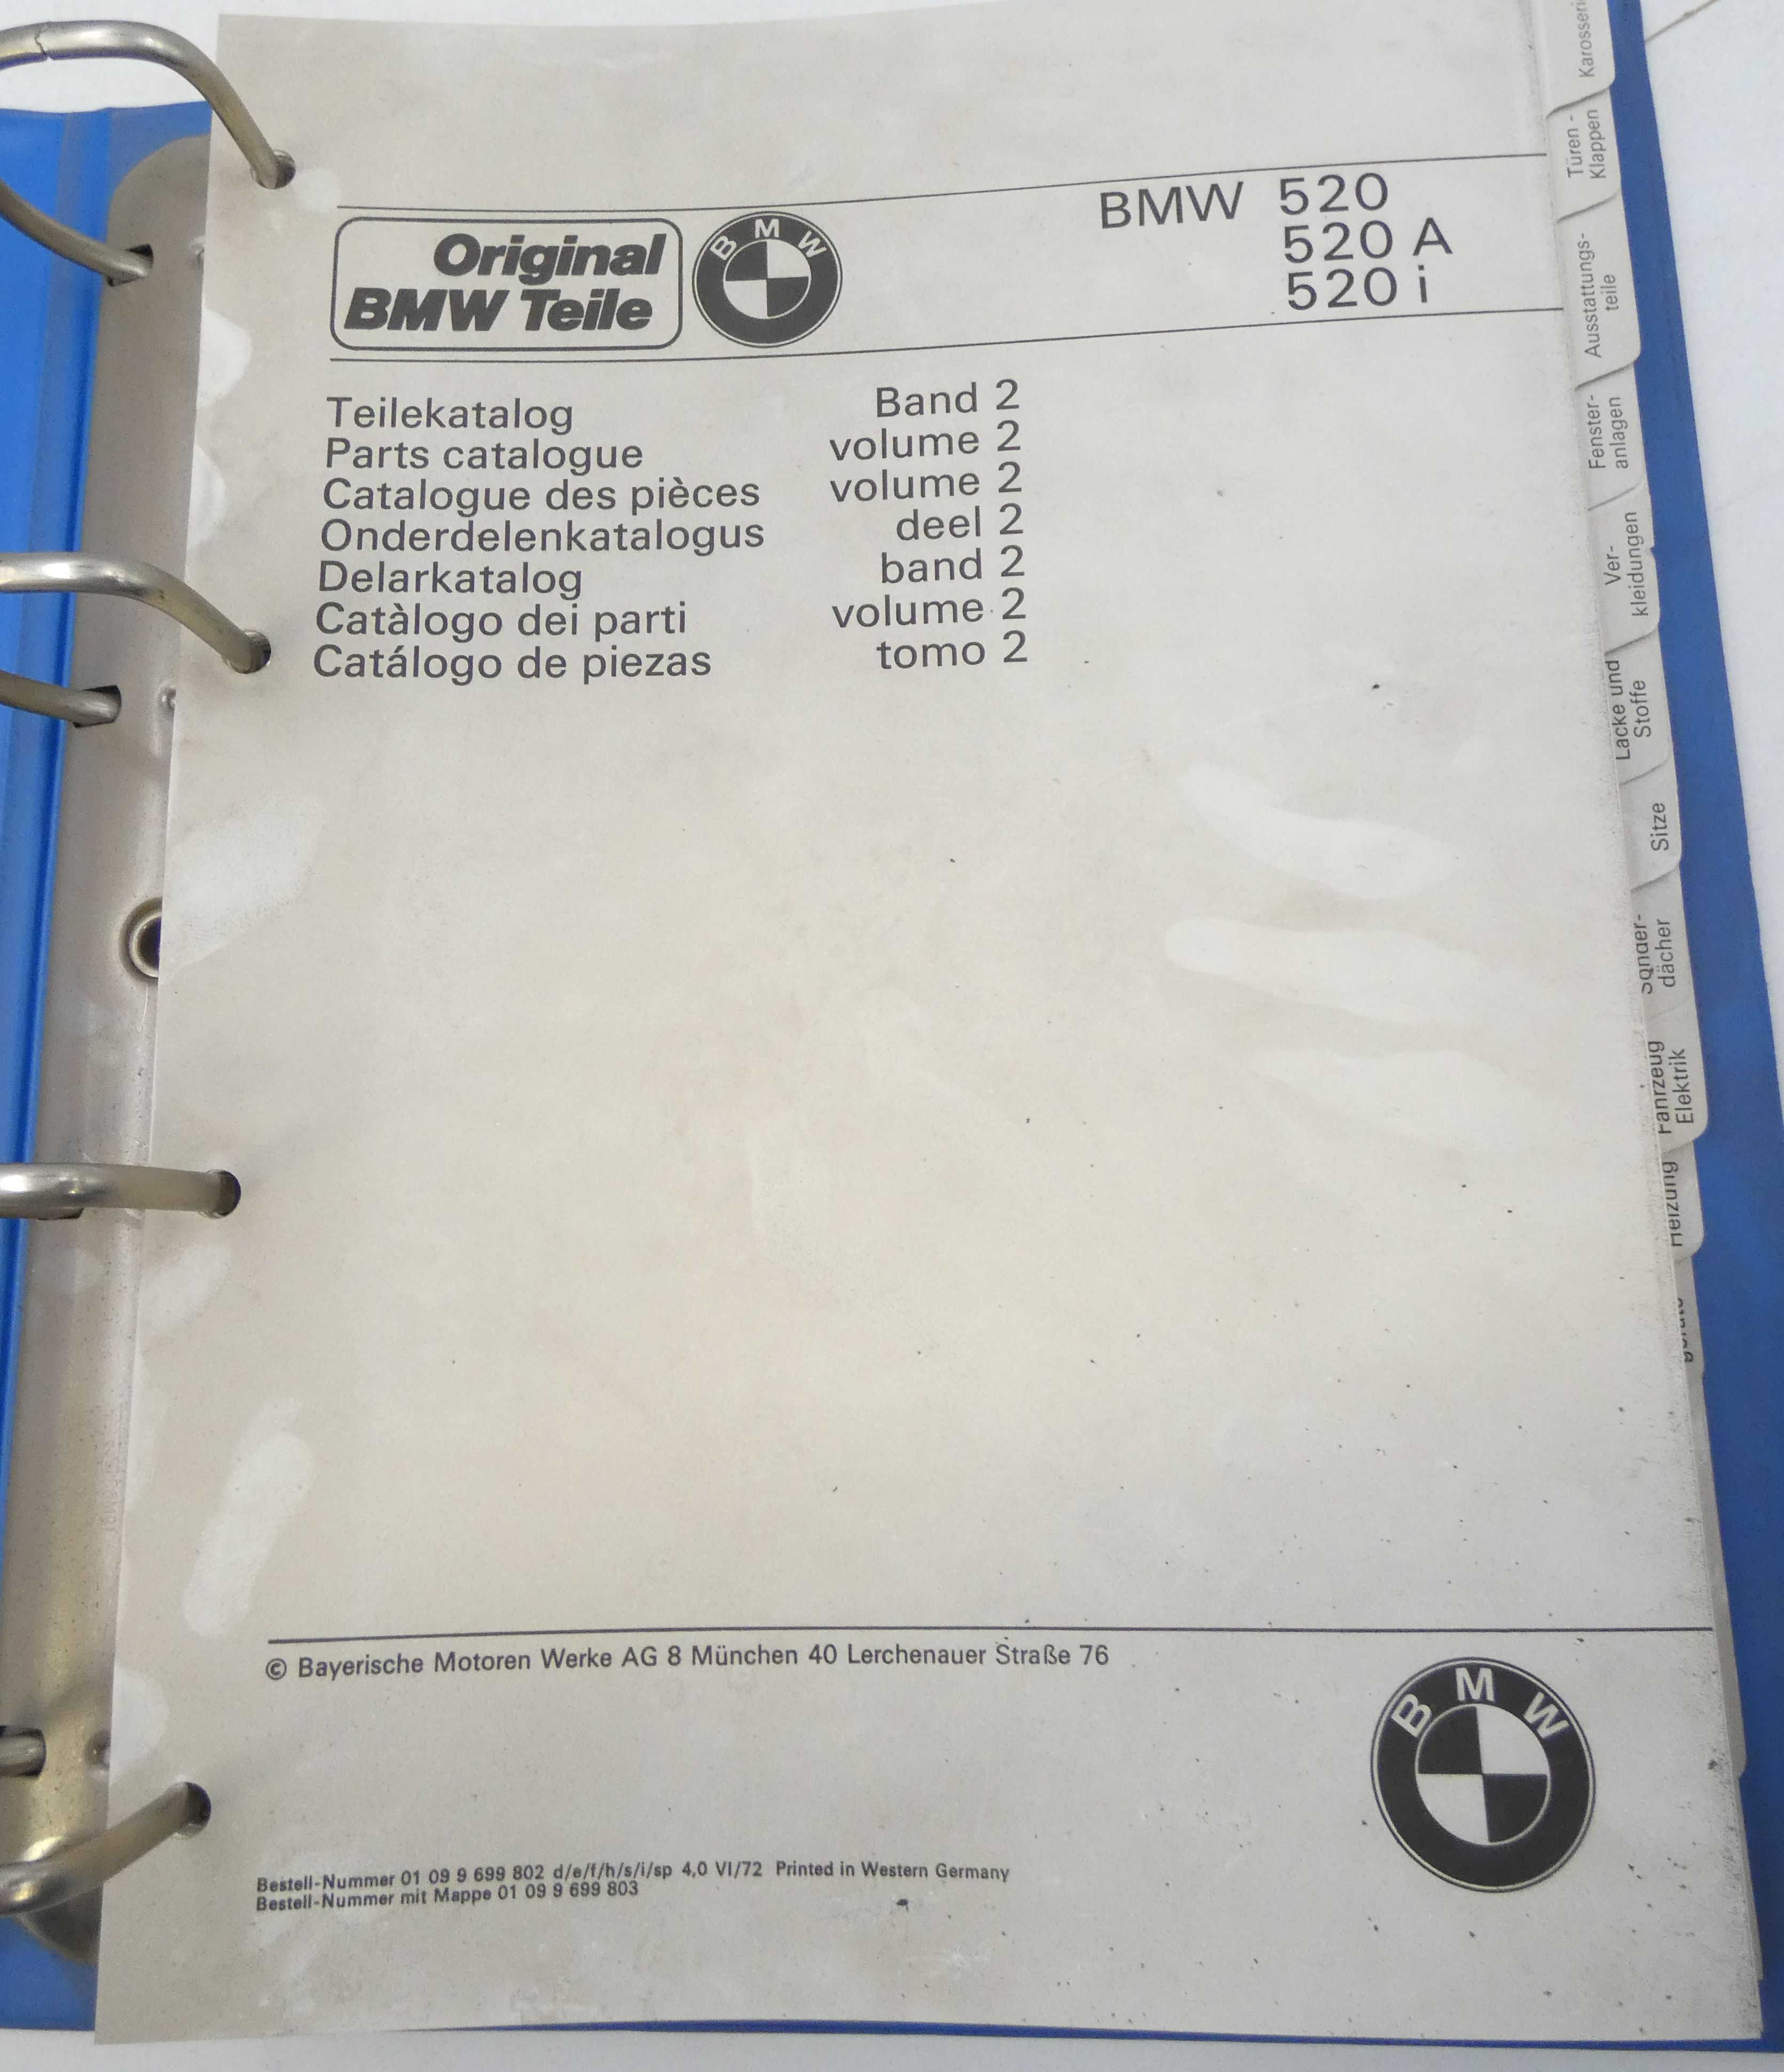 BMW 502, 520 A, 520i parts catalogue